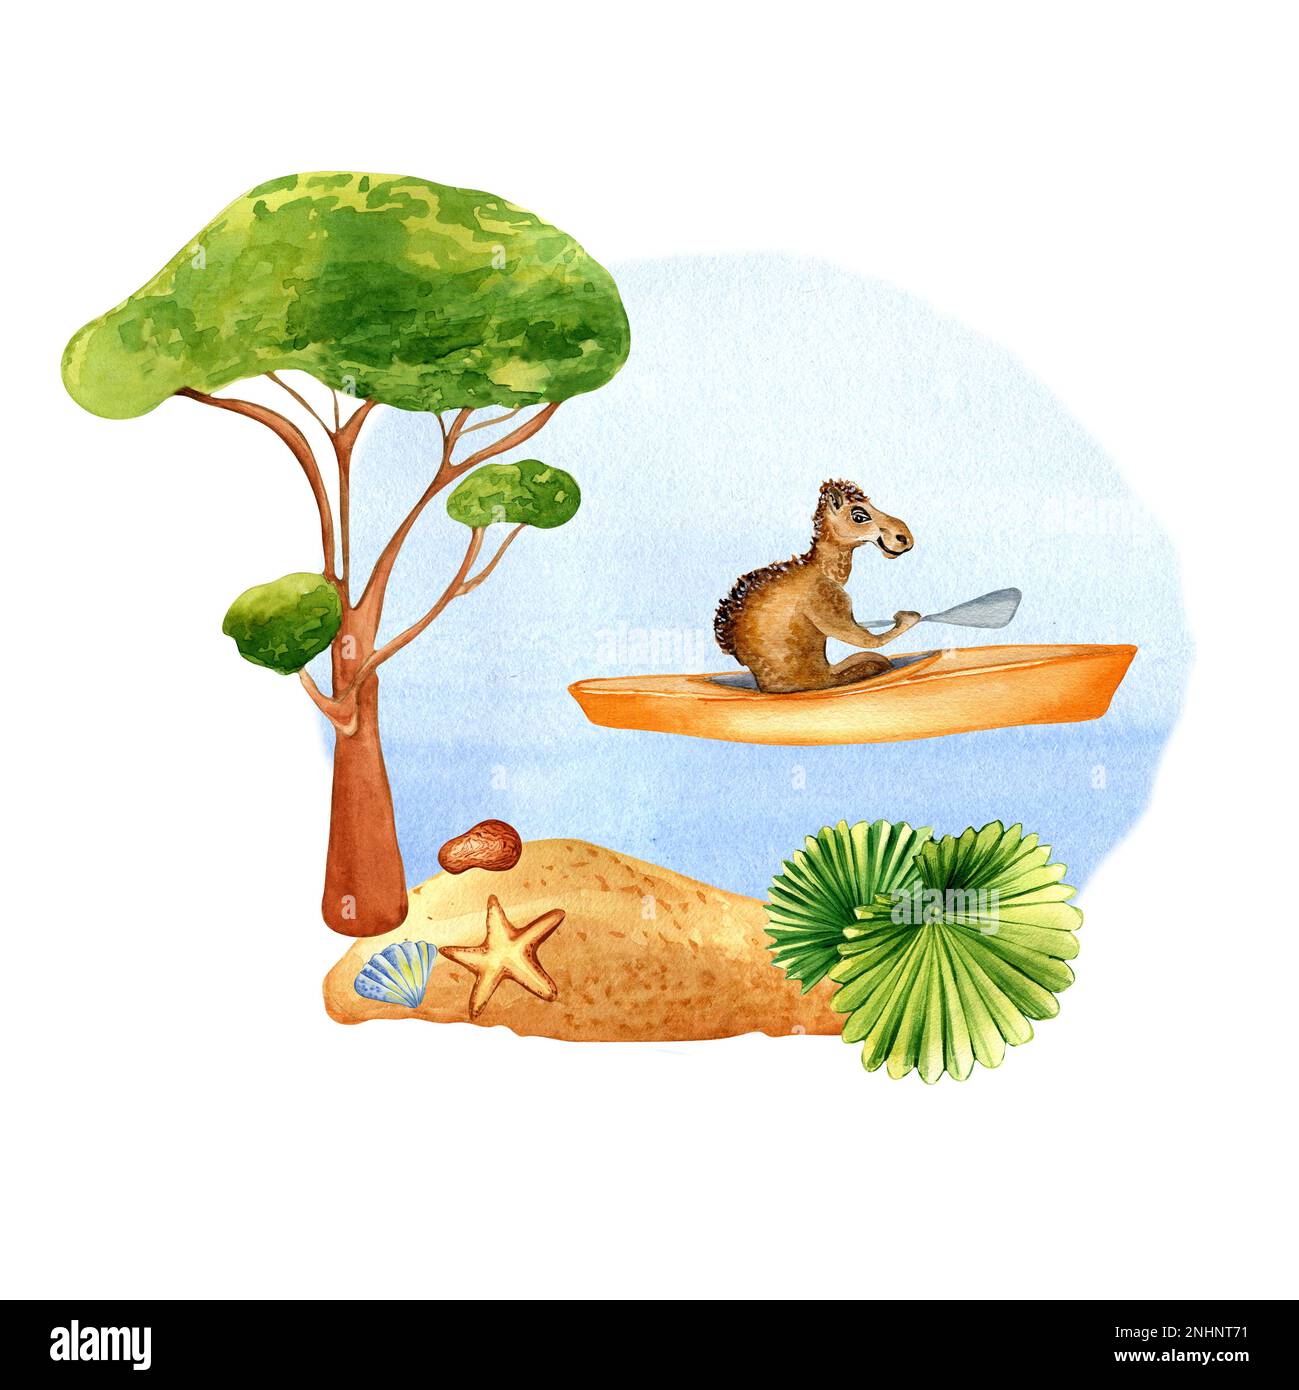 Camello de dibujos animados tiene ilustración de acuarela de deporte acuático aislado en blanco. Actividad de verano kayak, canoa costa, paisaje marino dibujado a mano. Elemento de diseño fo Foto de stock